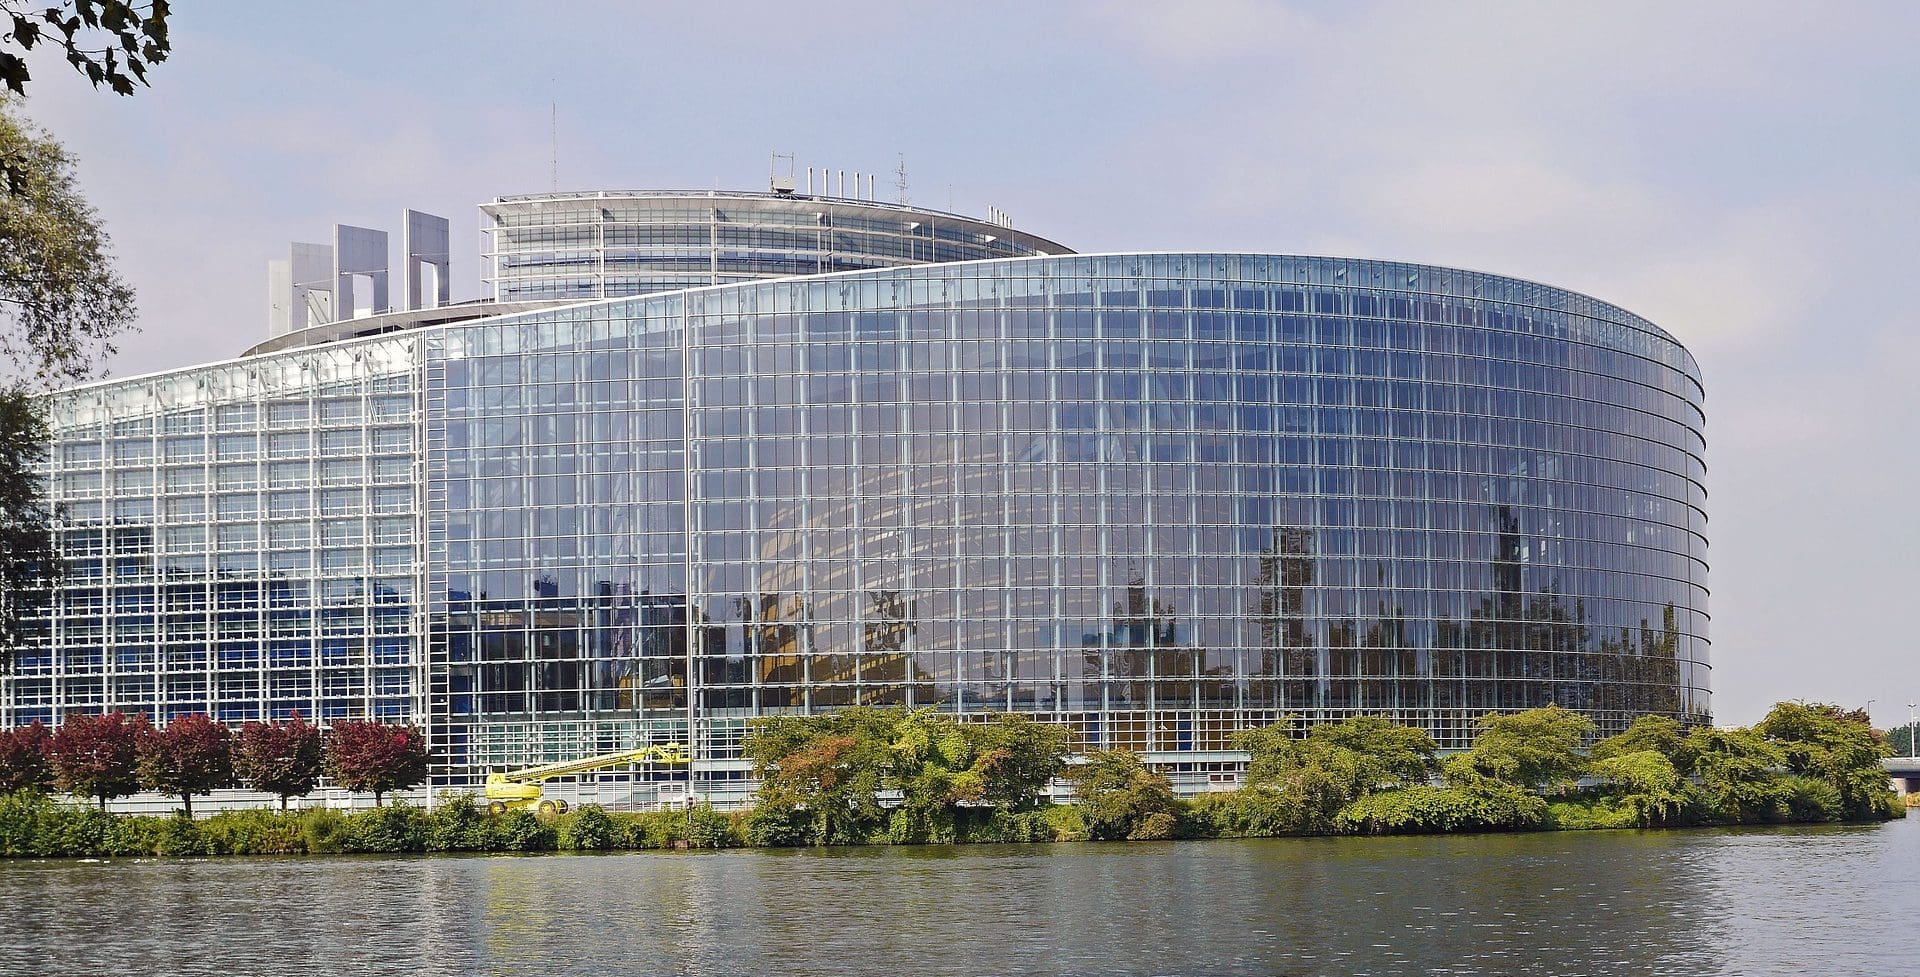 Parlamentum Europaeum Argentoratum